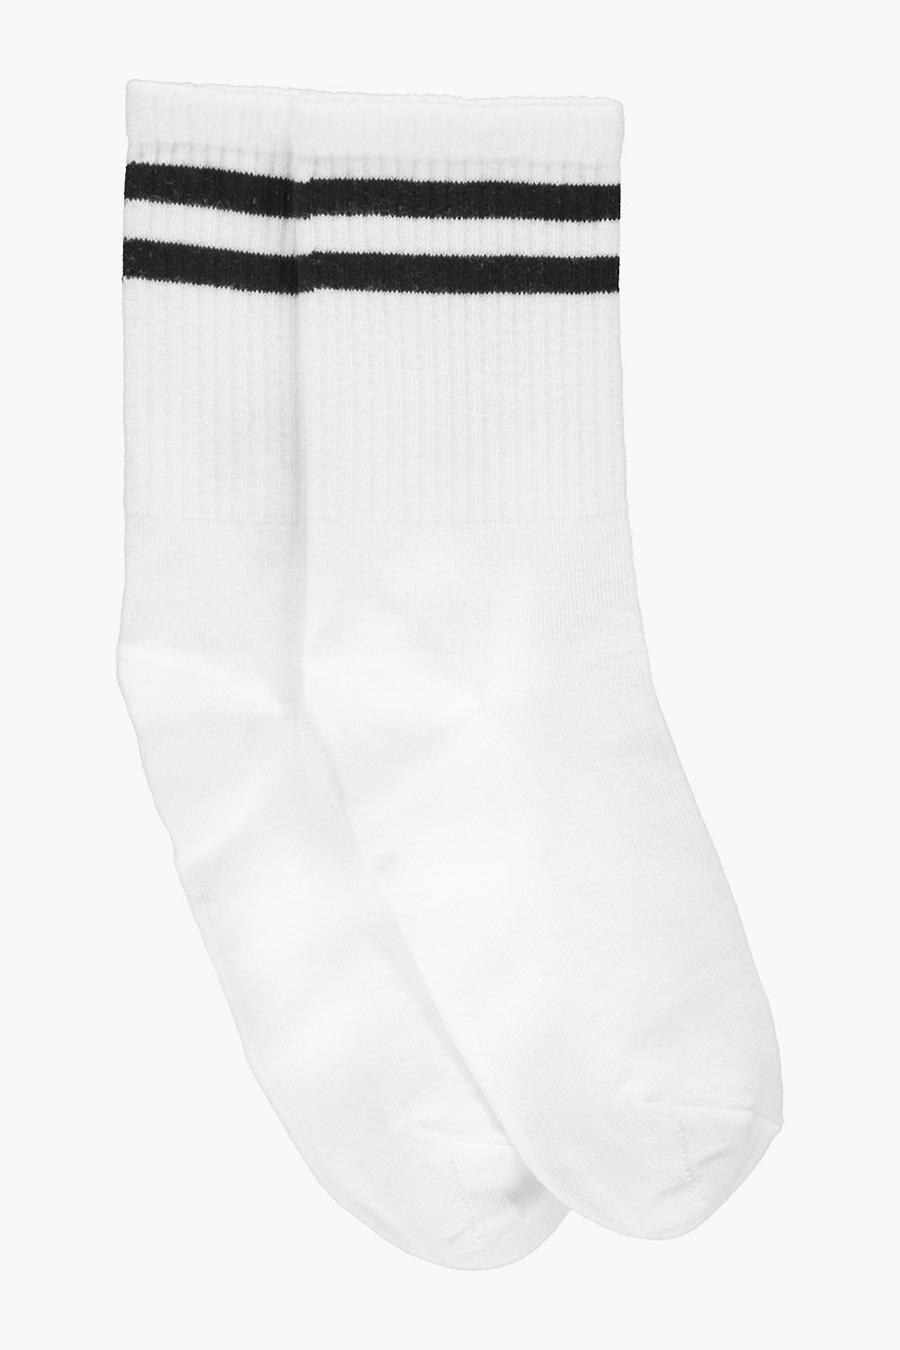 Calcetines tobilleros con rayas deportivas, Blanco bianco